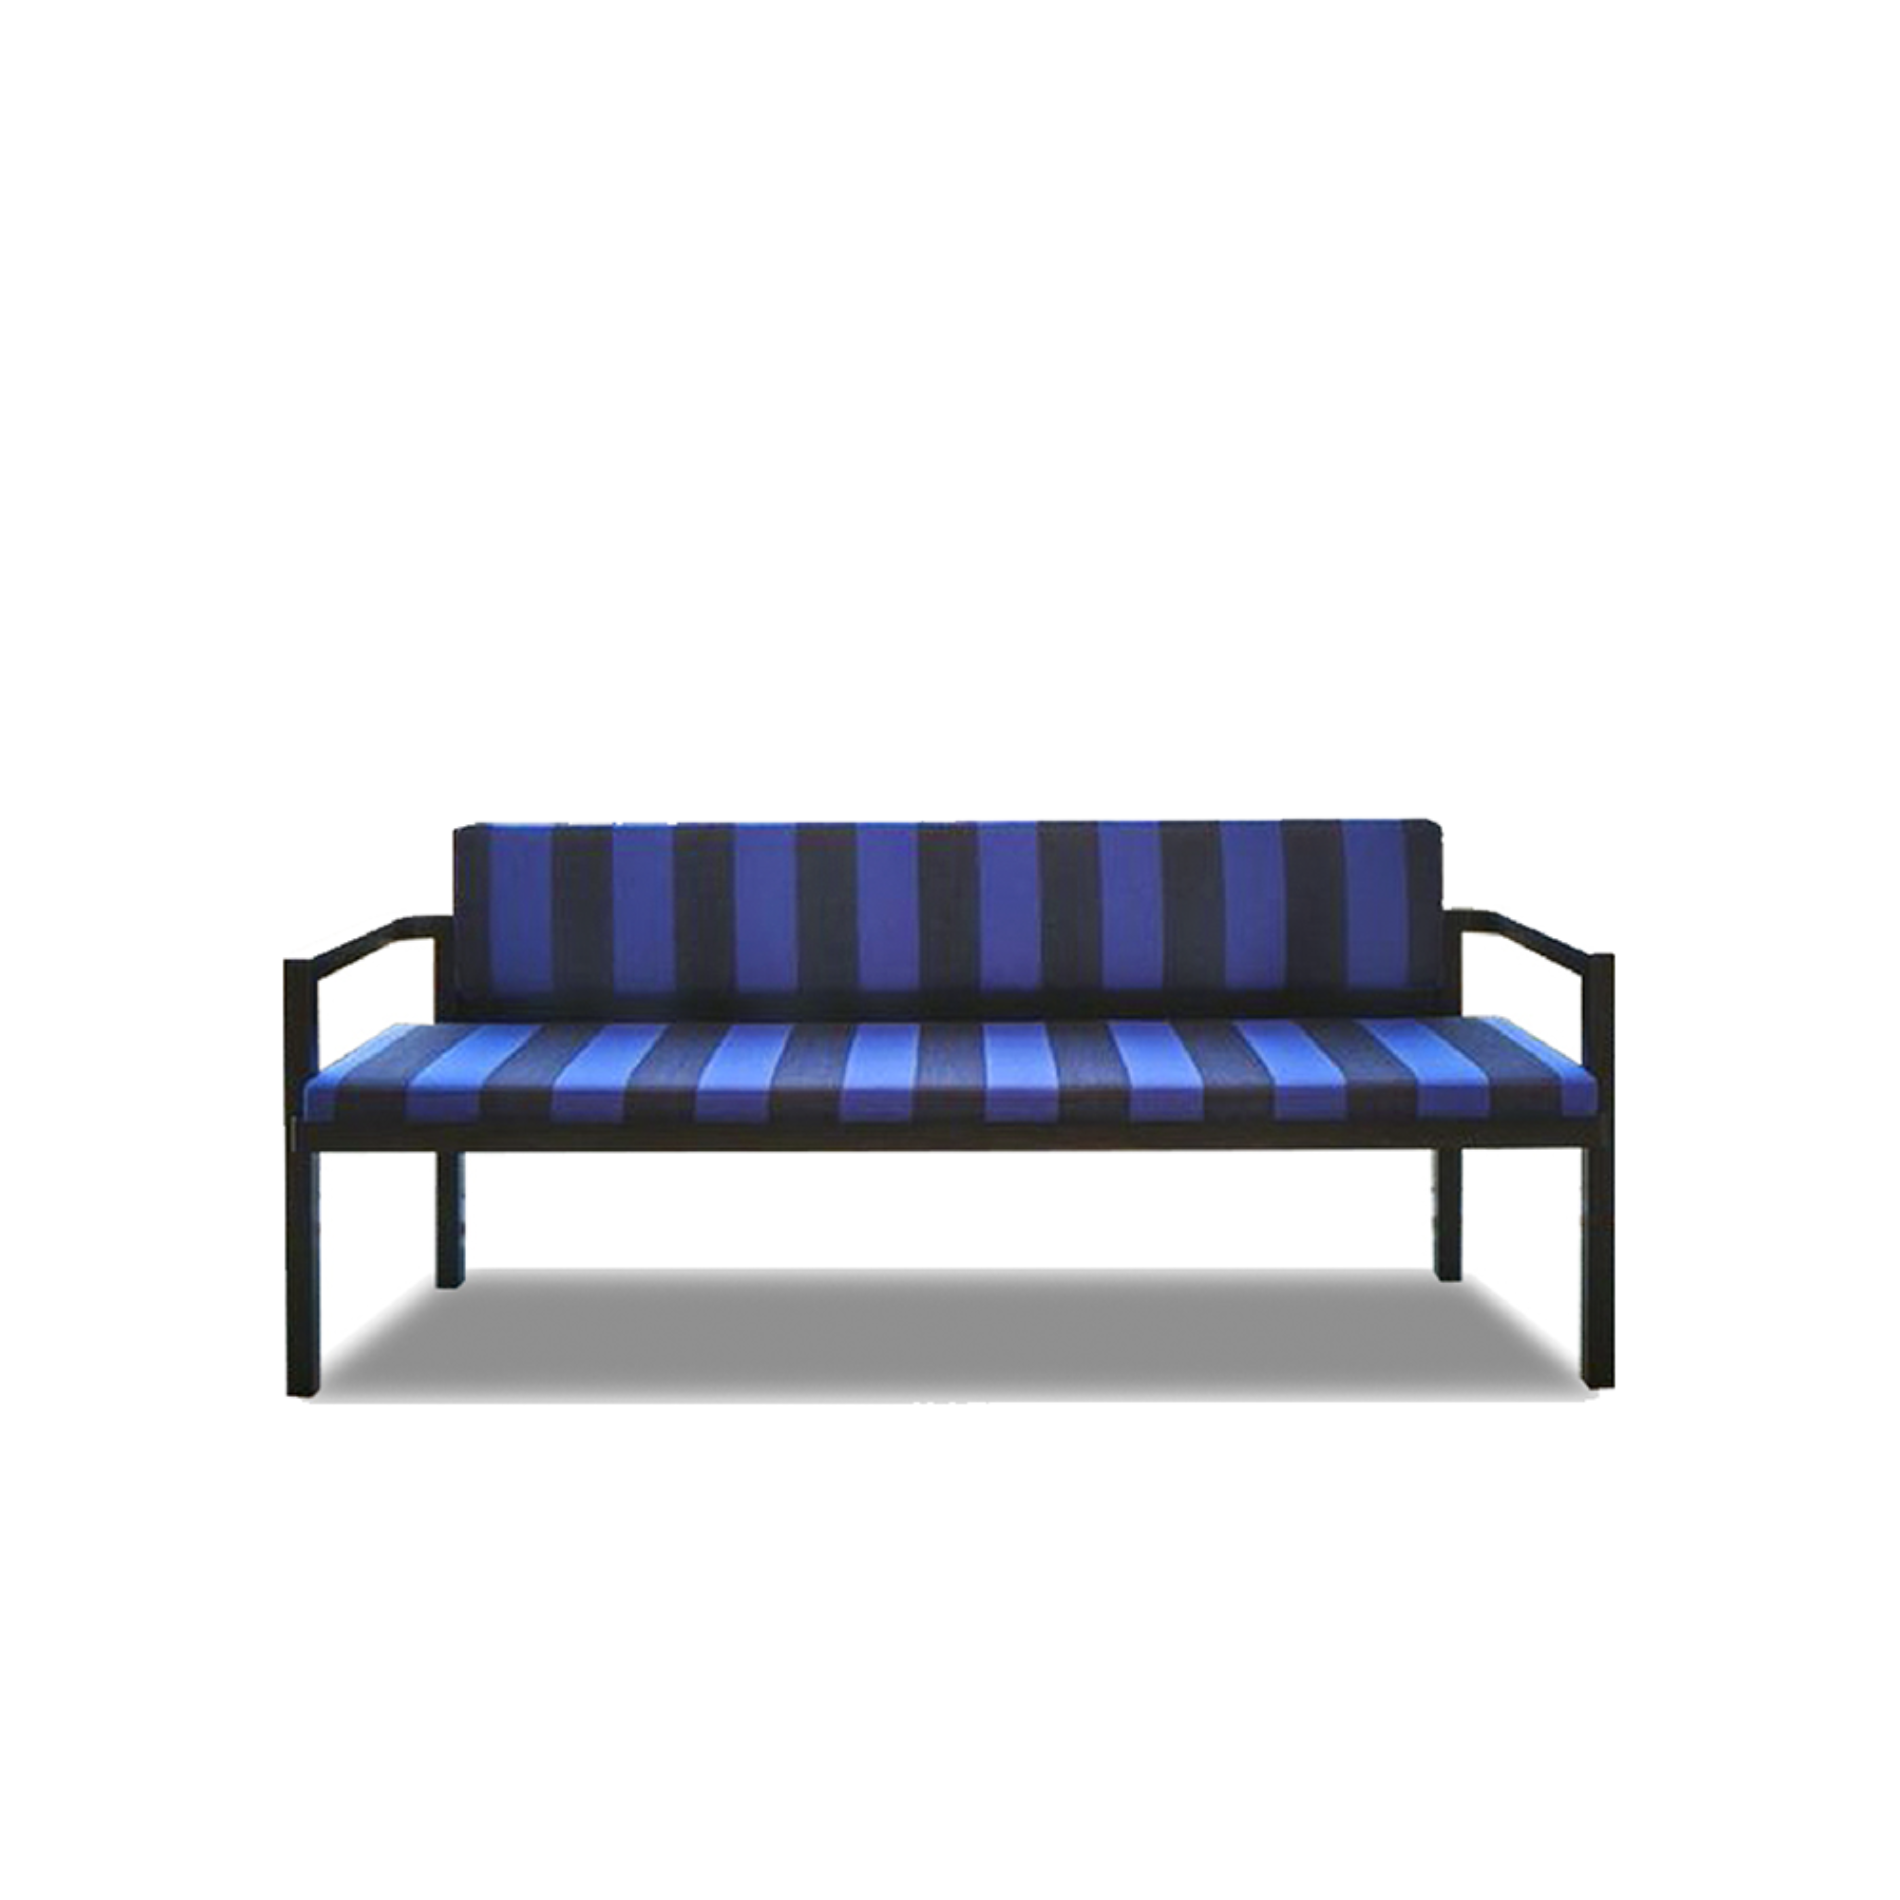 TECTA D51-3 Sofa - Black / Blue